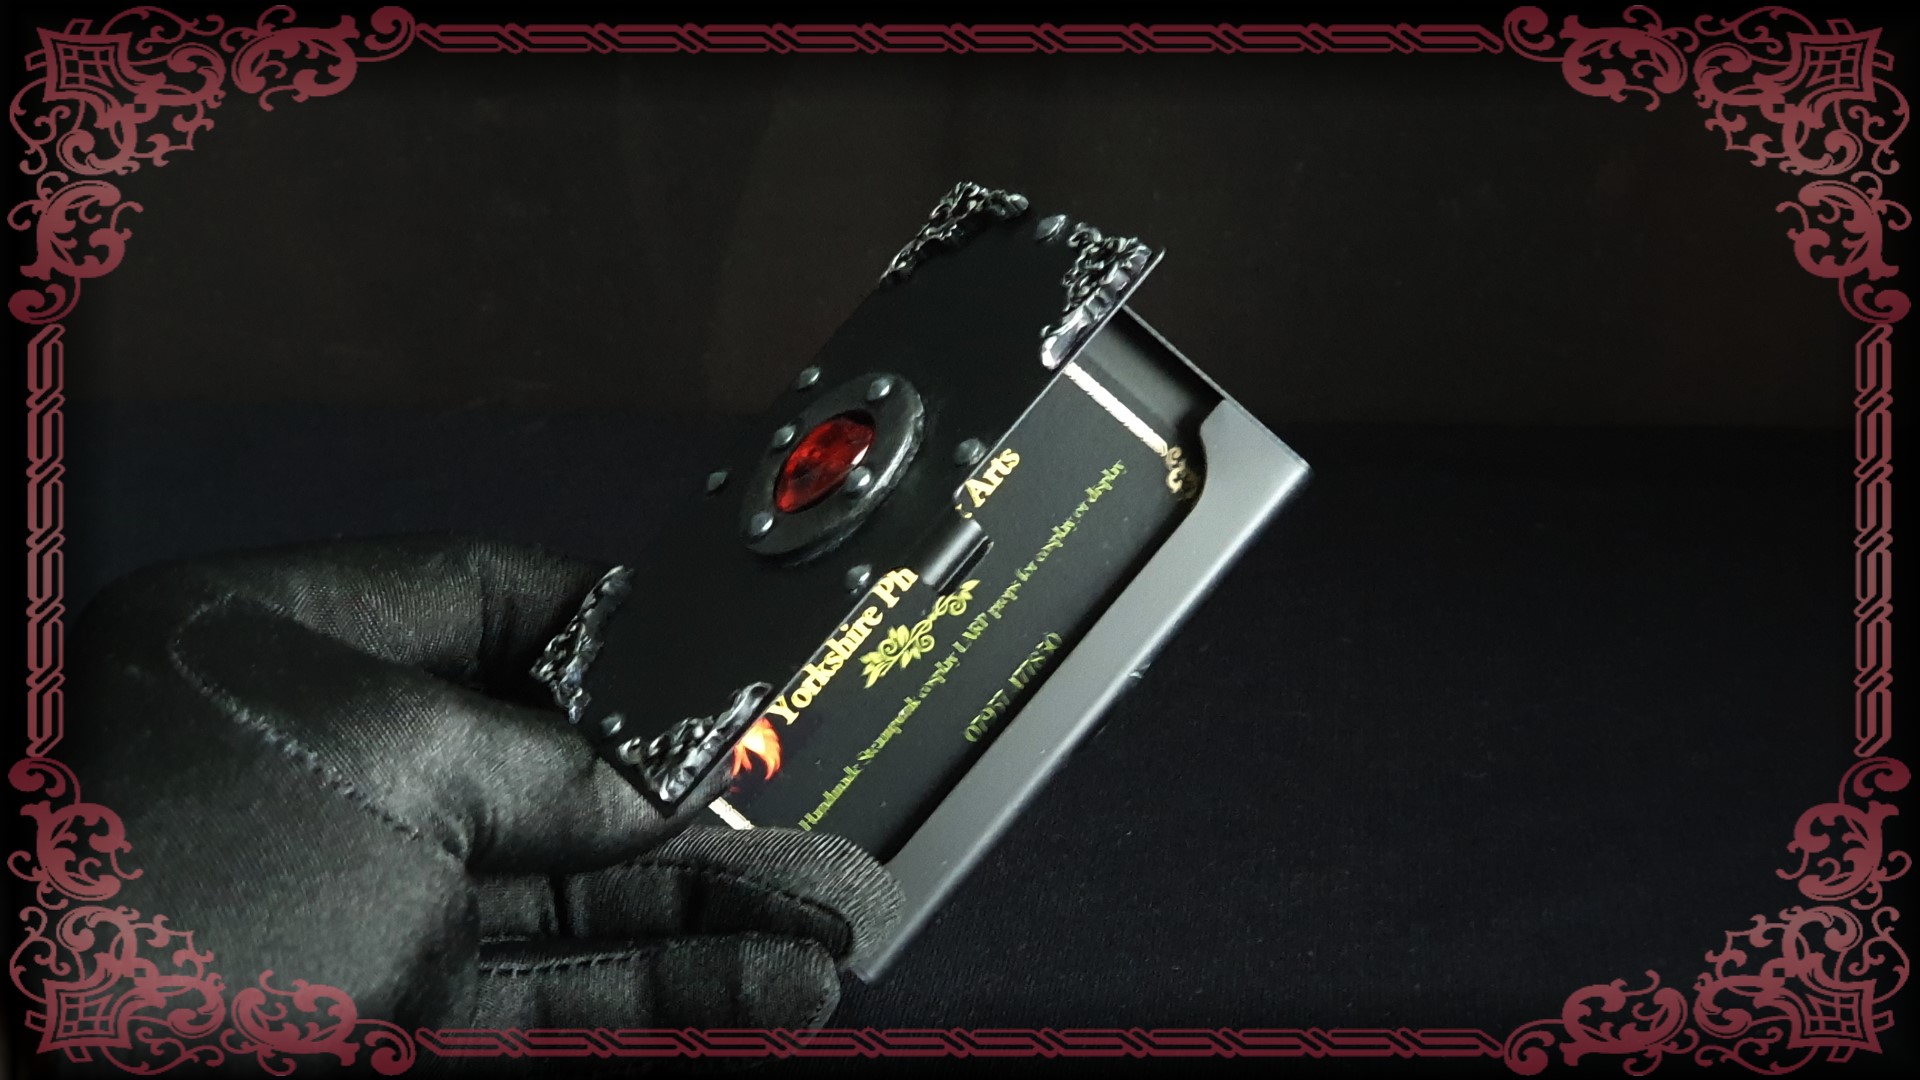 Goth Card Holder